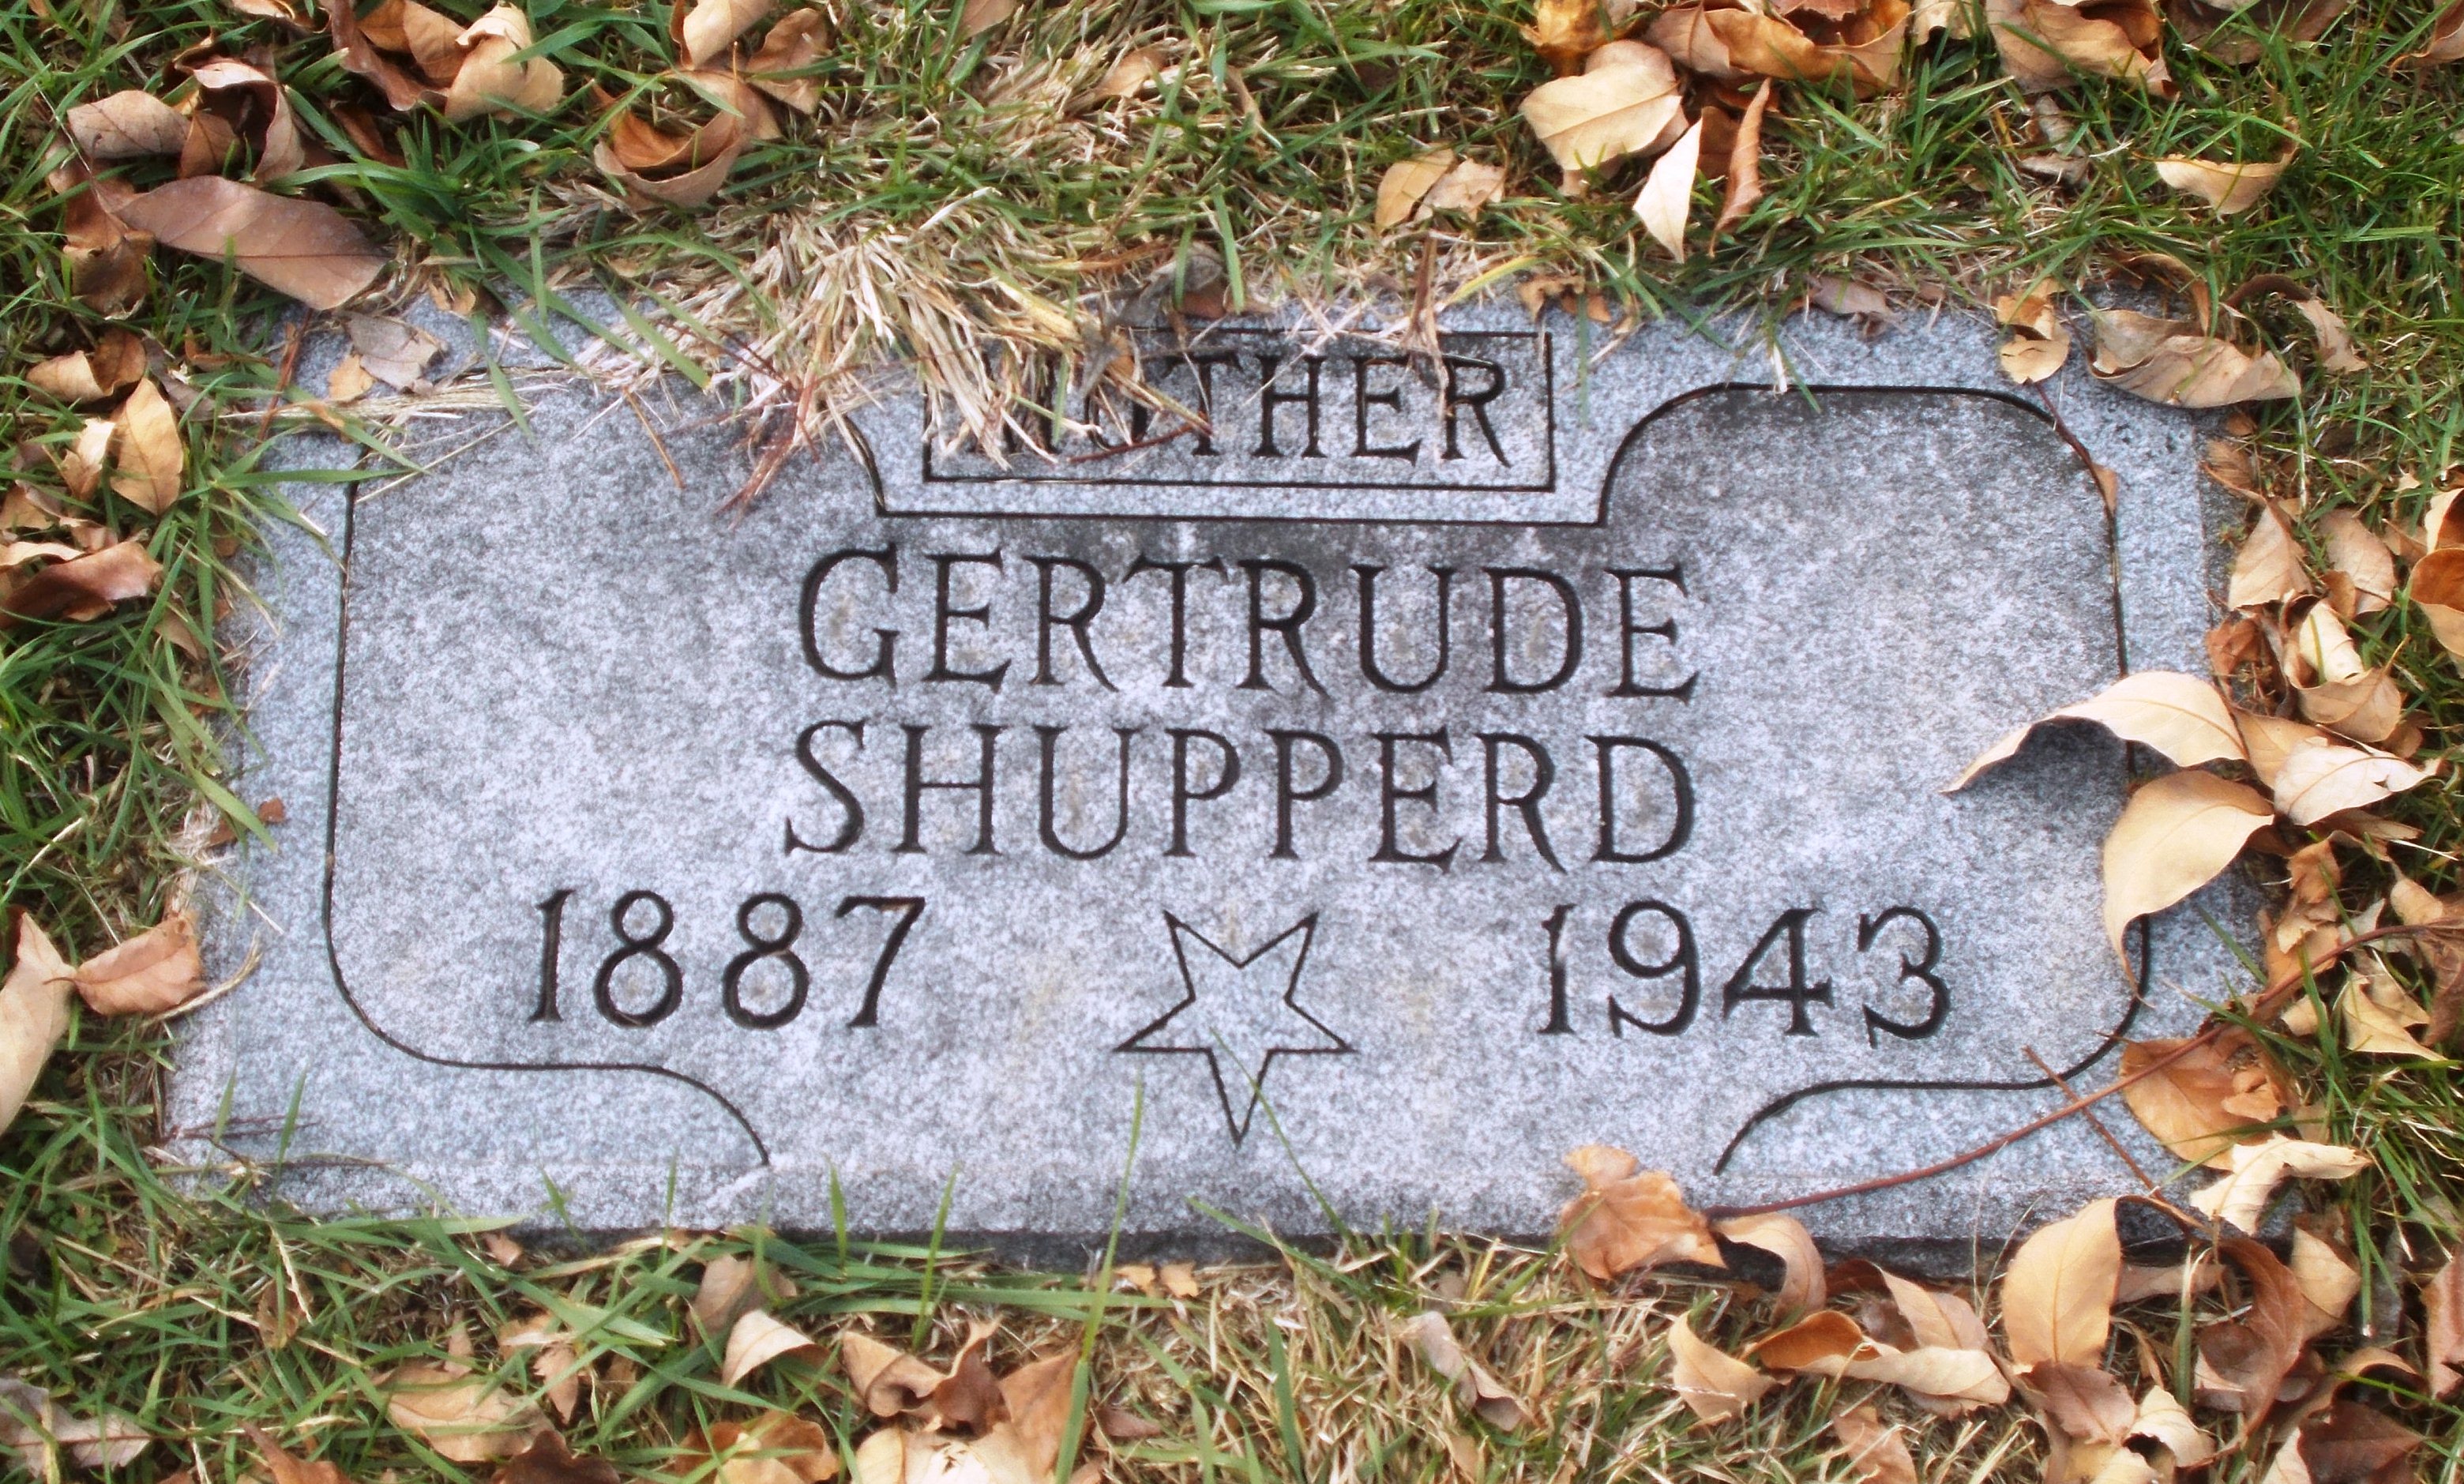 Gertrude Shupperd